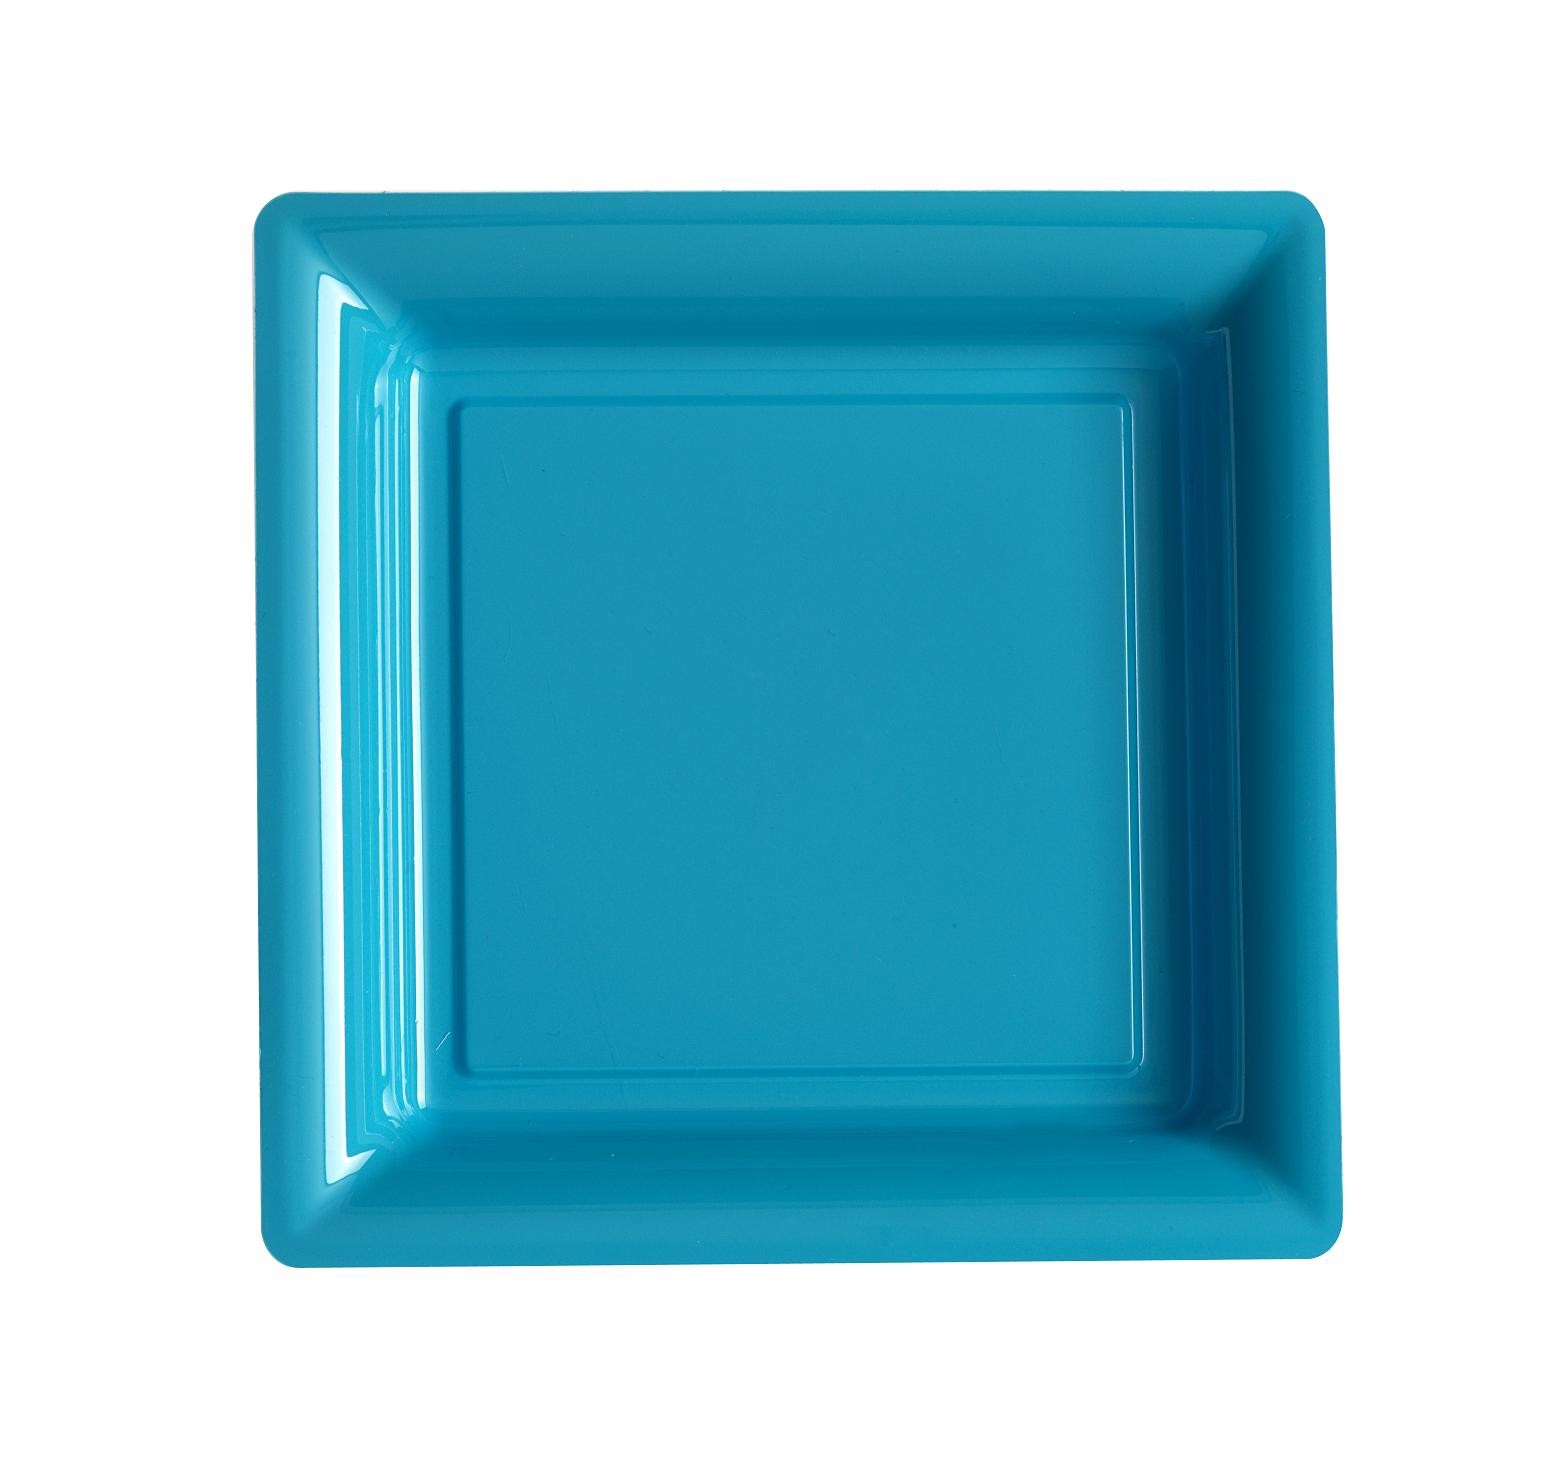 Extiff Lot de 25 Assiettes Colorées en Plastique Recyclable Turquoise, 18 x 18 cm Dimensions et Couleurs au Choix